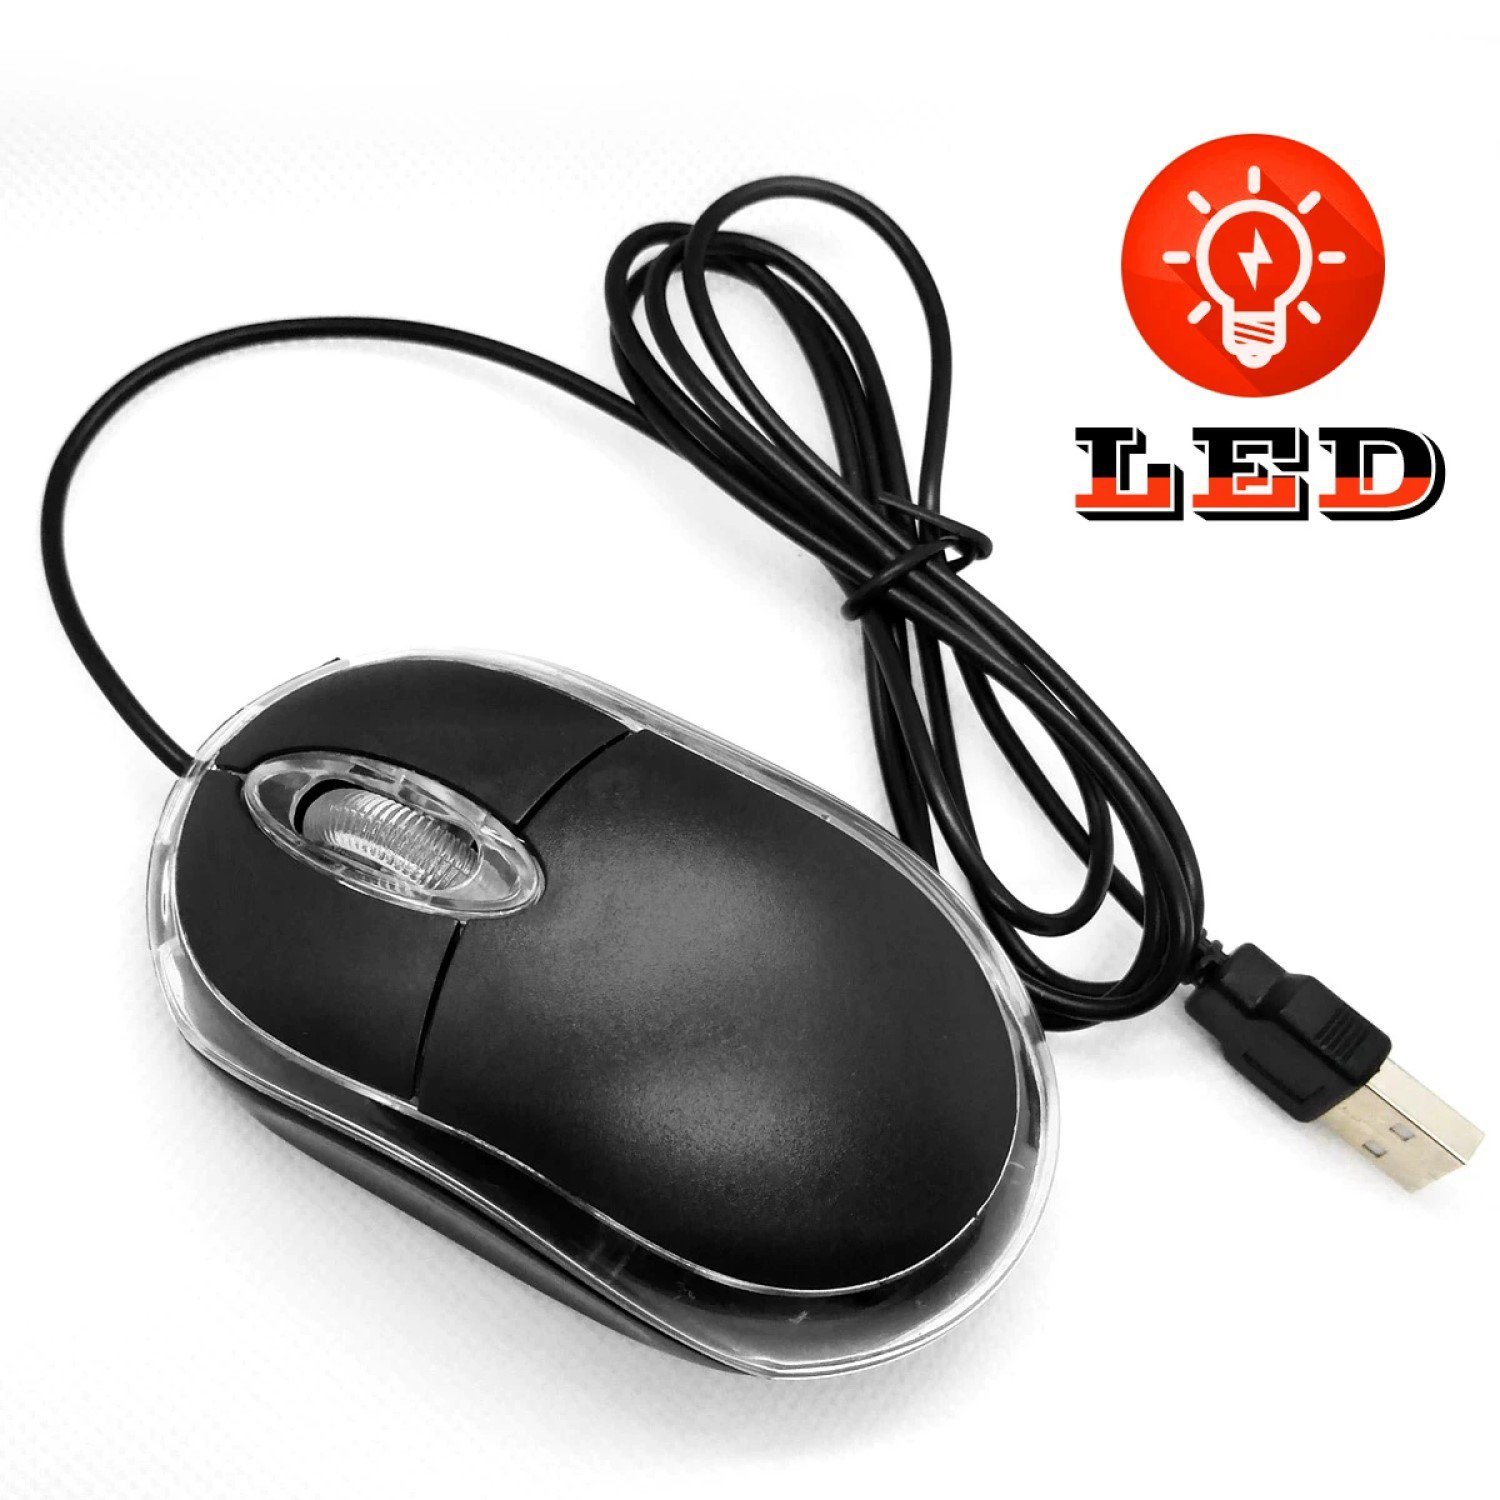 Mouse Usb Óptico Plug And Play Com Fio Banson Tech Computador Notebook Pc 800 1000dpi Alta Precisão - 6